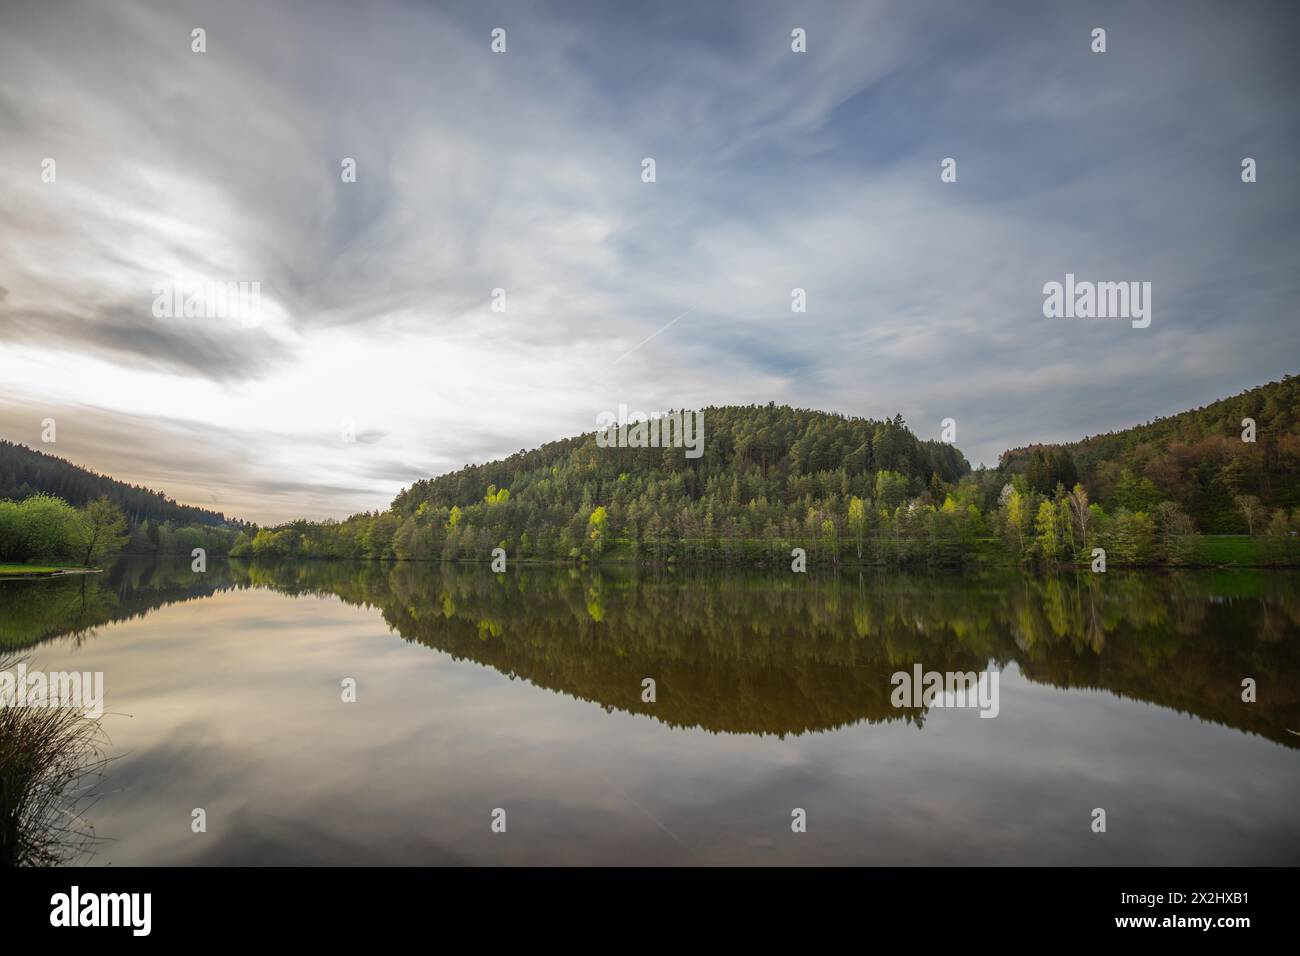 Un lac dans un paysage photographié. Un coucher de soleil et l'environnement naturel se reflètent dans l'eau du réservoir. Réservoir Marbach, Odenwald, Hesse Banque D'Images